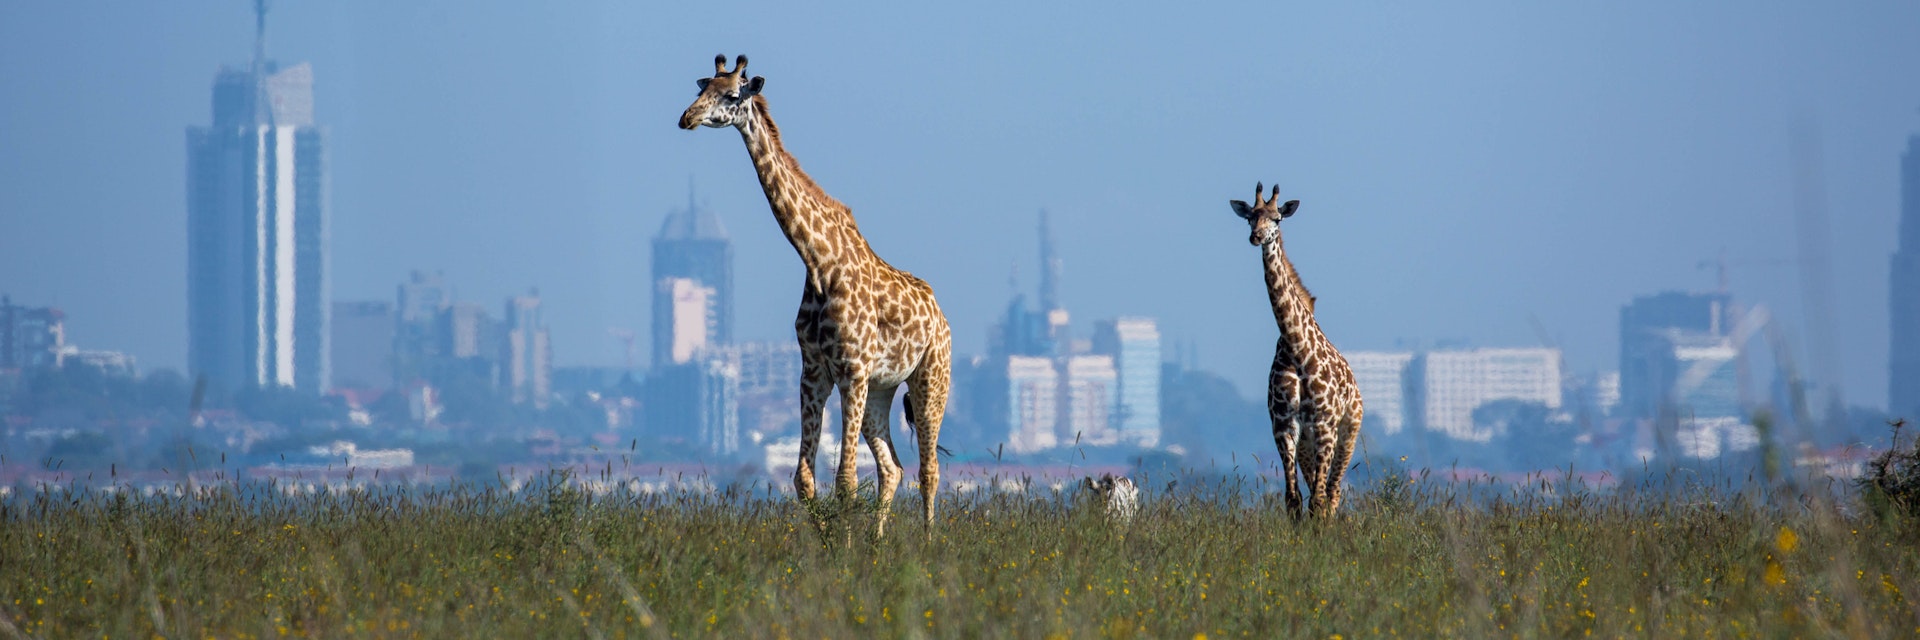 A Masai Giraffe (Giraffa camelopardalis tippelskirchii aka Kilimanjaro giraffe) and her calf in Nairobi National Park with the city in the background.
945049802
giraffa camelopardalis tippelskirchii, kilimanjaro giraffe